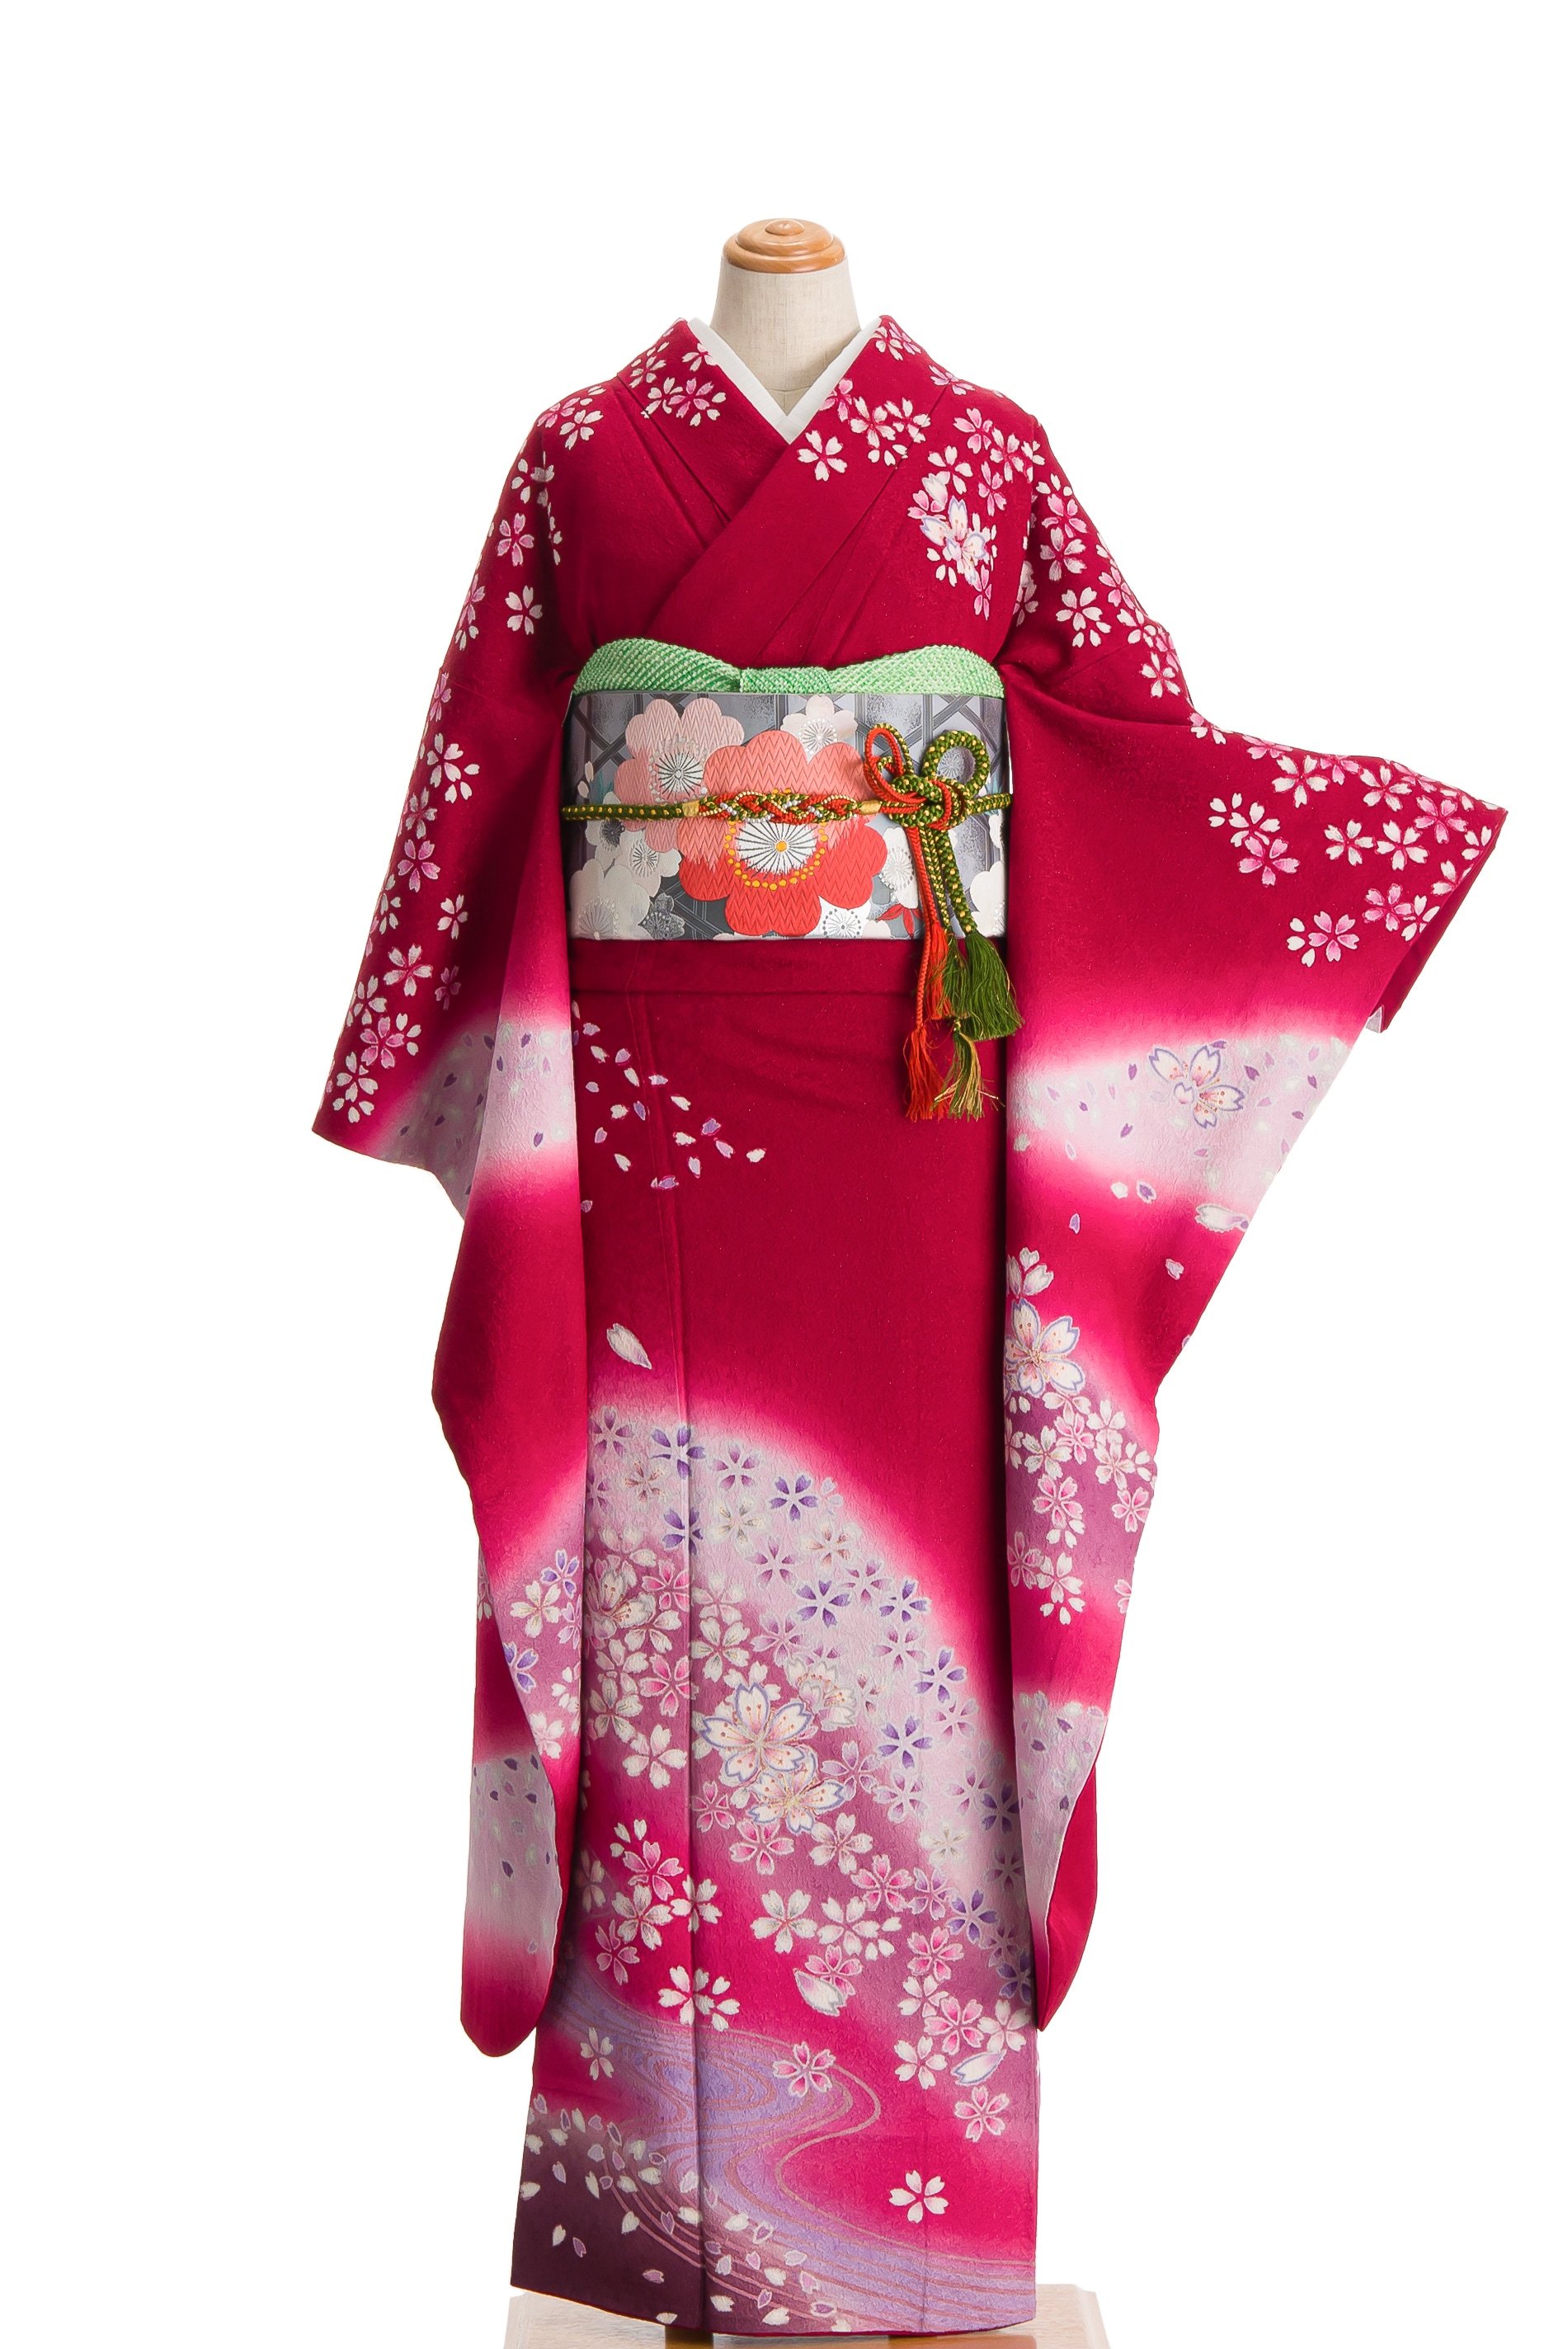 振袖 桜の霞 - からん::アンティーク着物・リサイクル着物の通販サイト